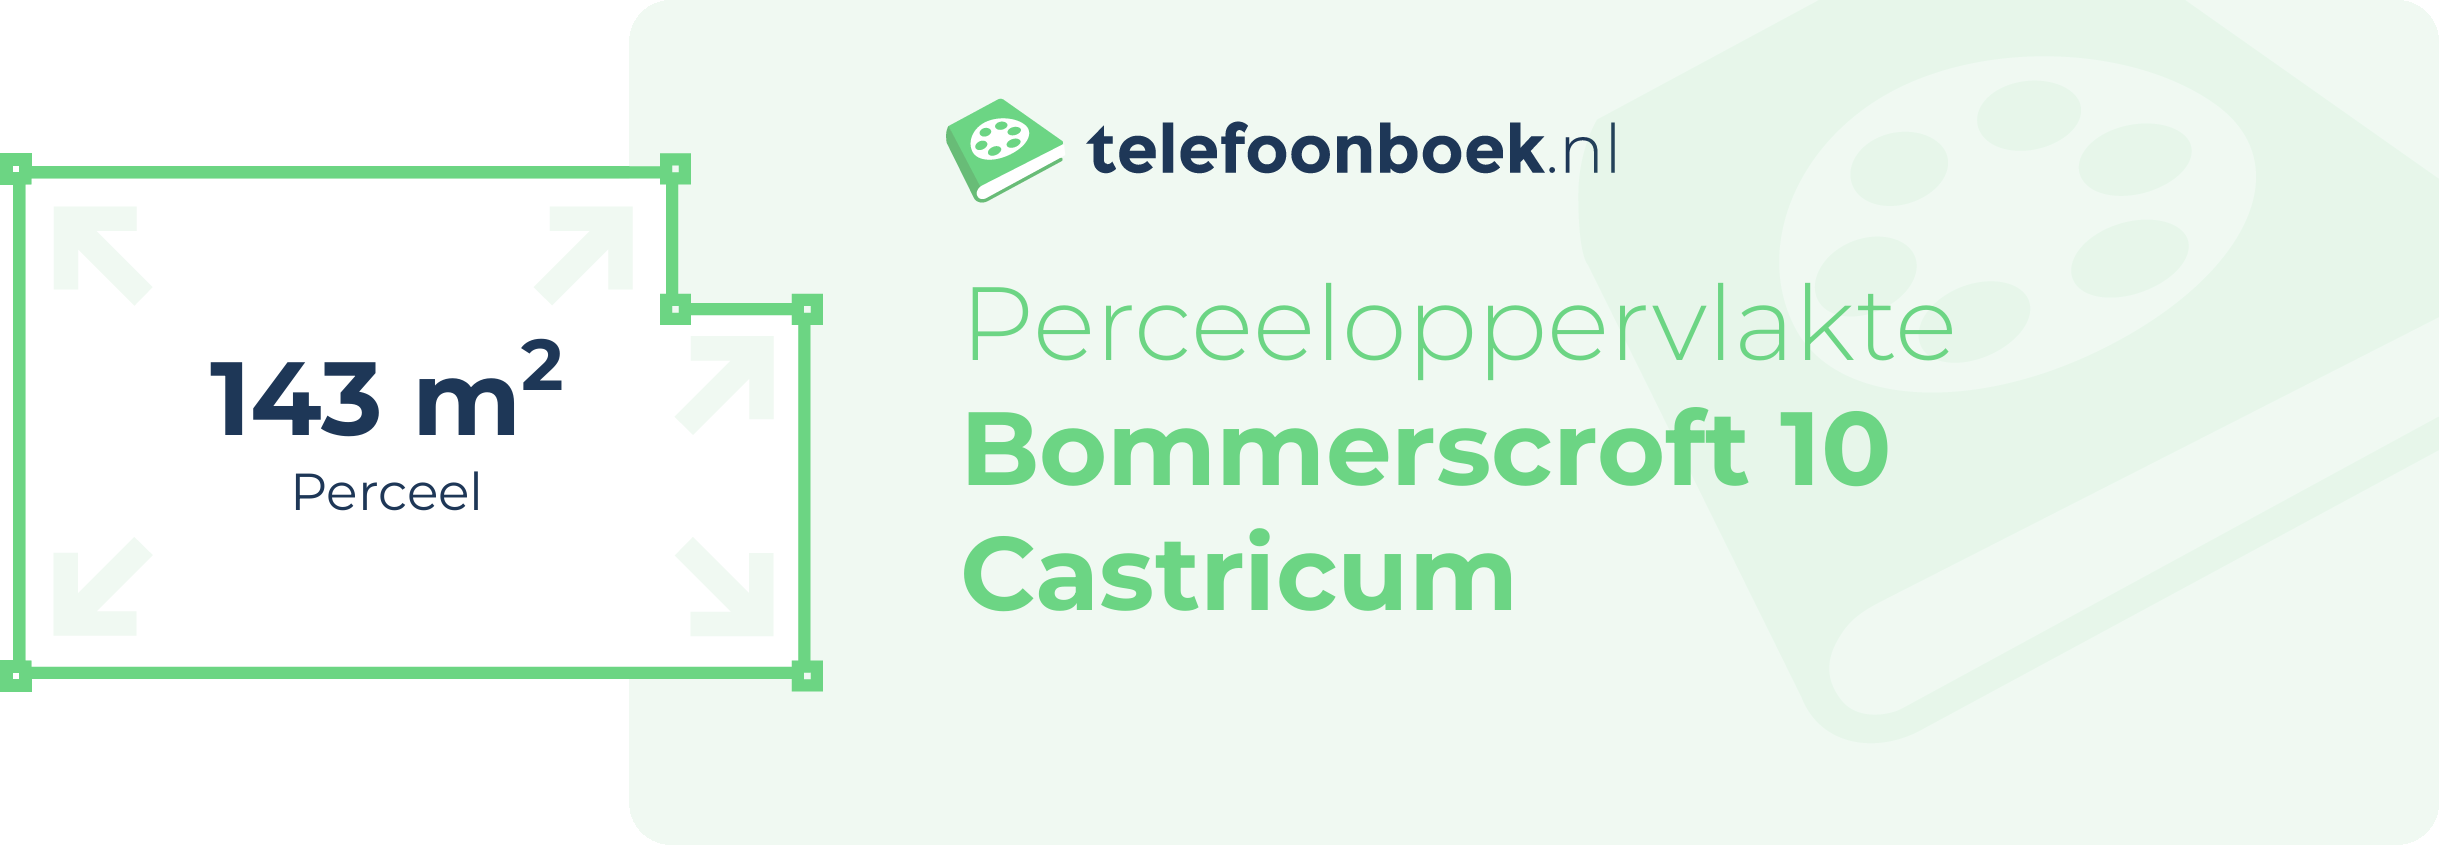 Perceeloppervlakte Bommerscroft 10 Castricum